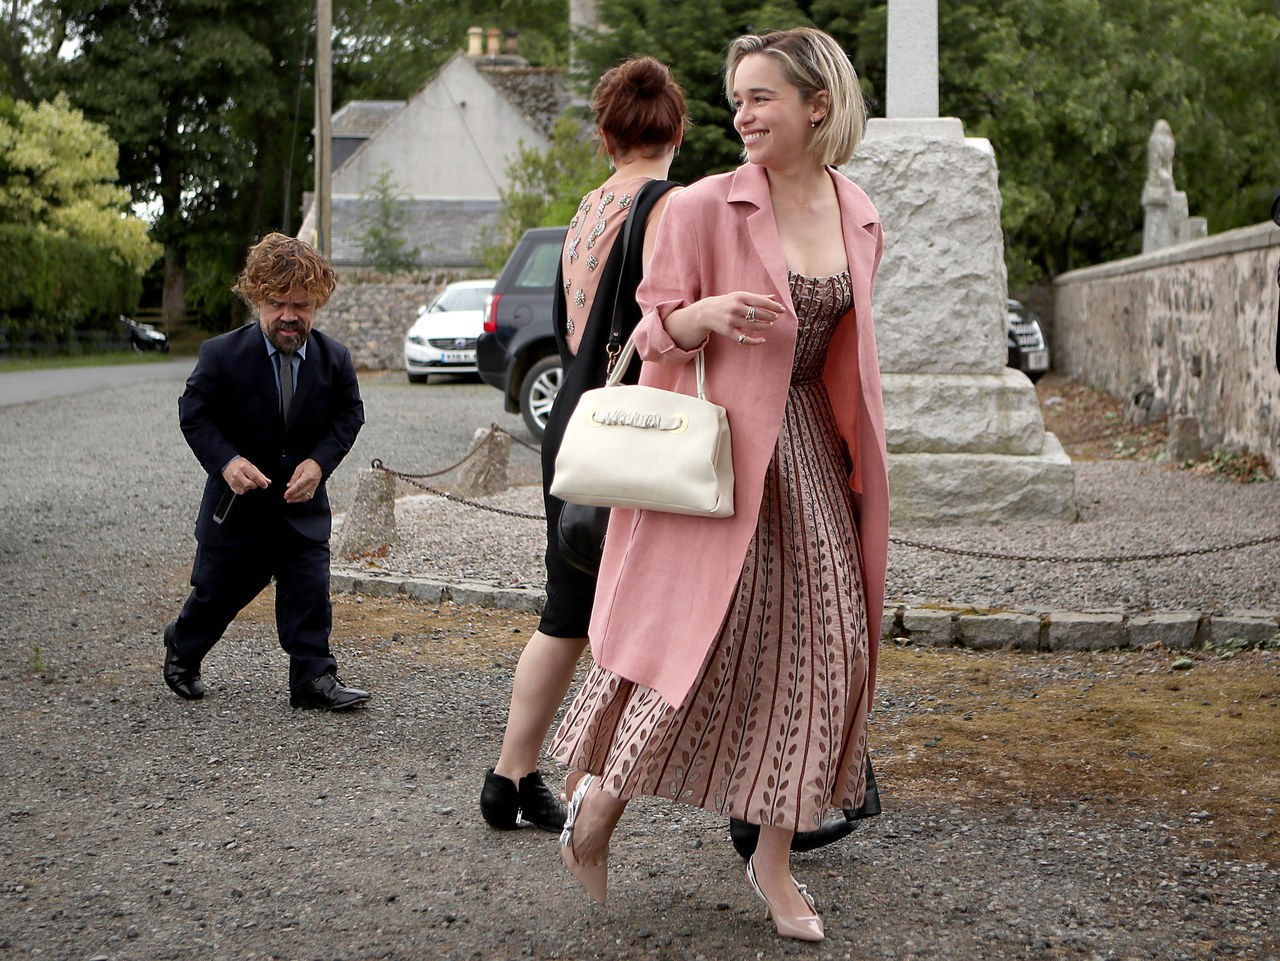 艾米利亚 Clarke arrives at Kit Harington and Rose Leslie's wedding